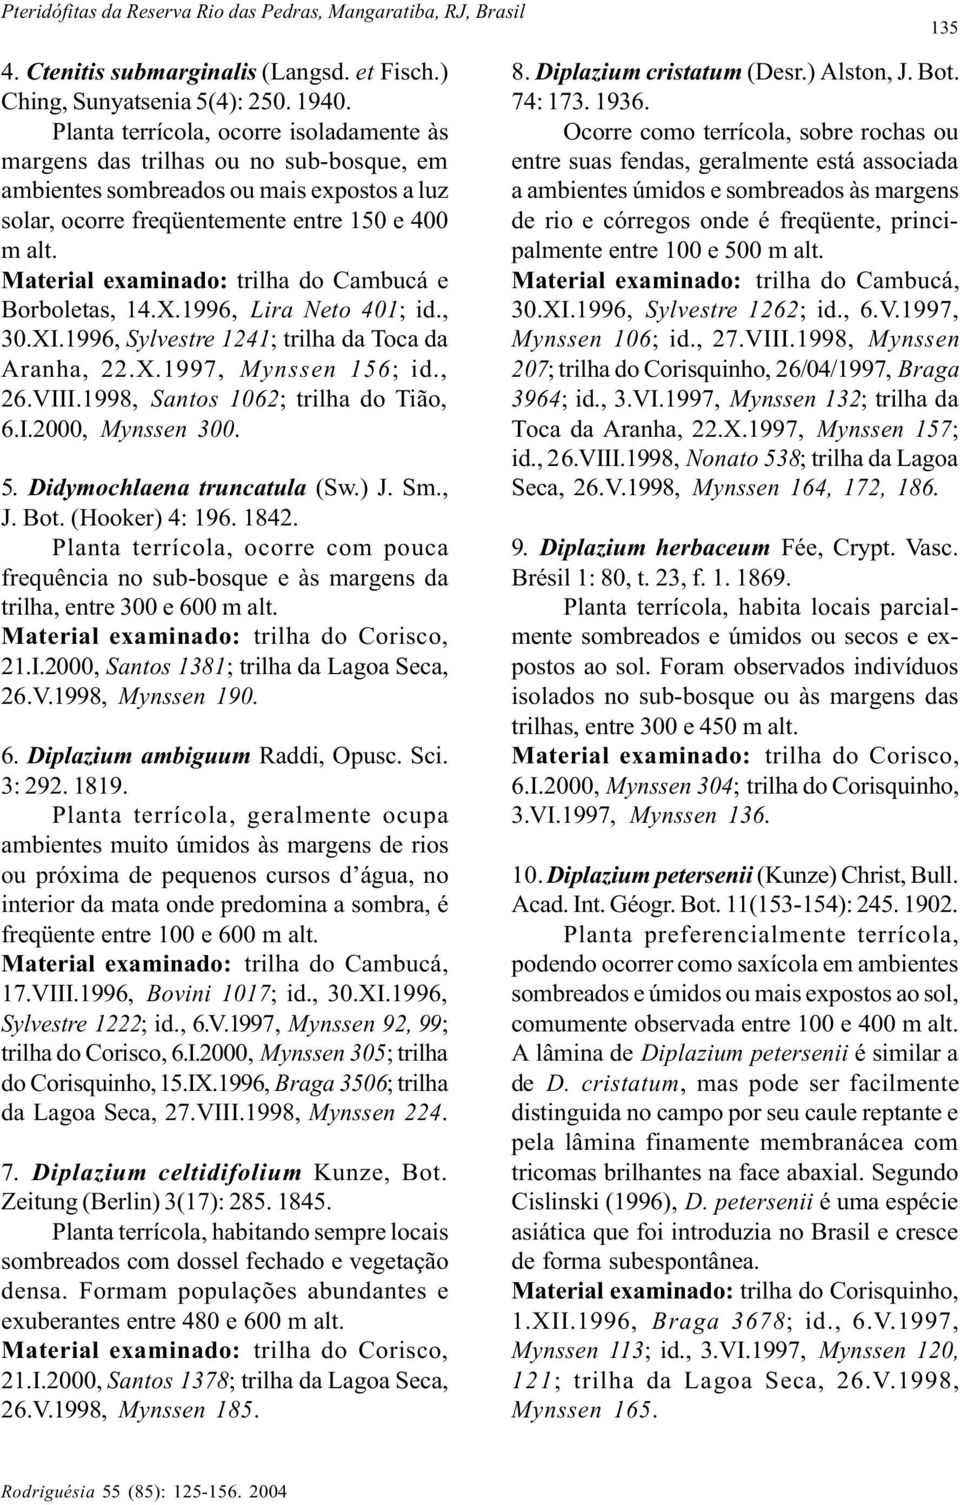 Material examinado: trilha do Cambucá e Borboletas, 14.X.1996, Lira Neto 401; id., 30.XI.1996, Sylvestre 1241; trilha da Toca da Aranha, 22.X.1997, Mynssen 156; id., 26.VIII.